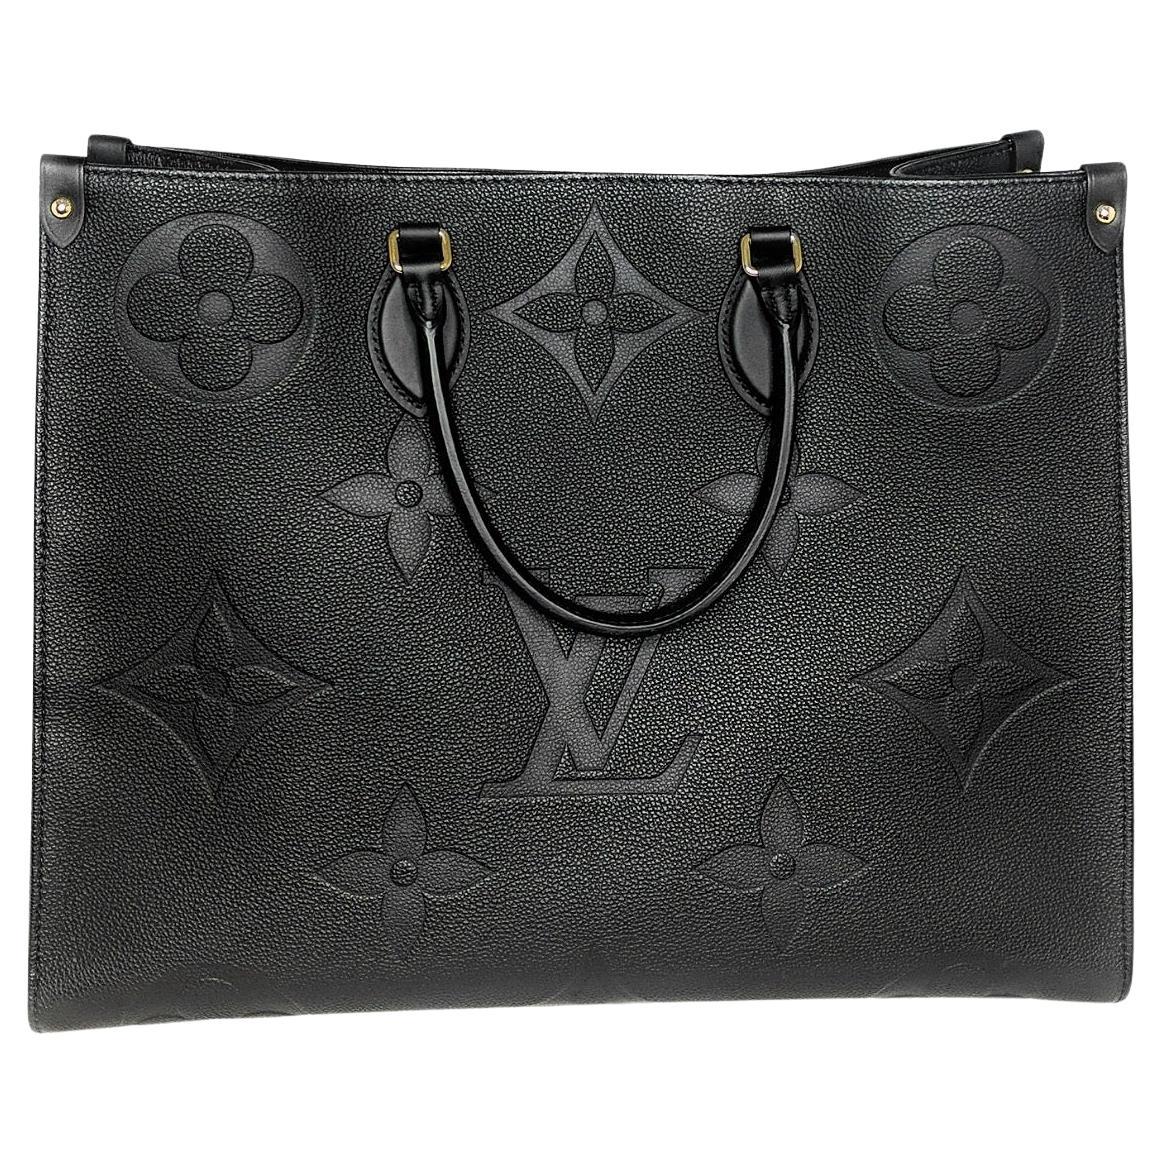 Louis Vuitton Monogram Empreinte Leather Onthego GM Tote